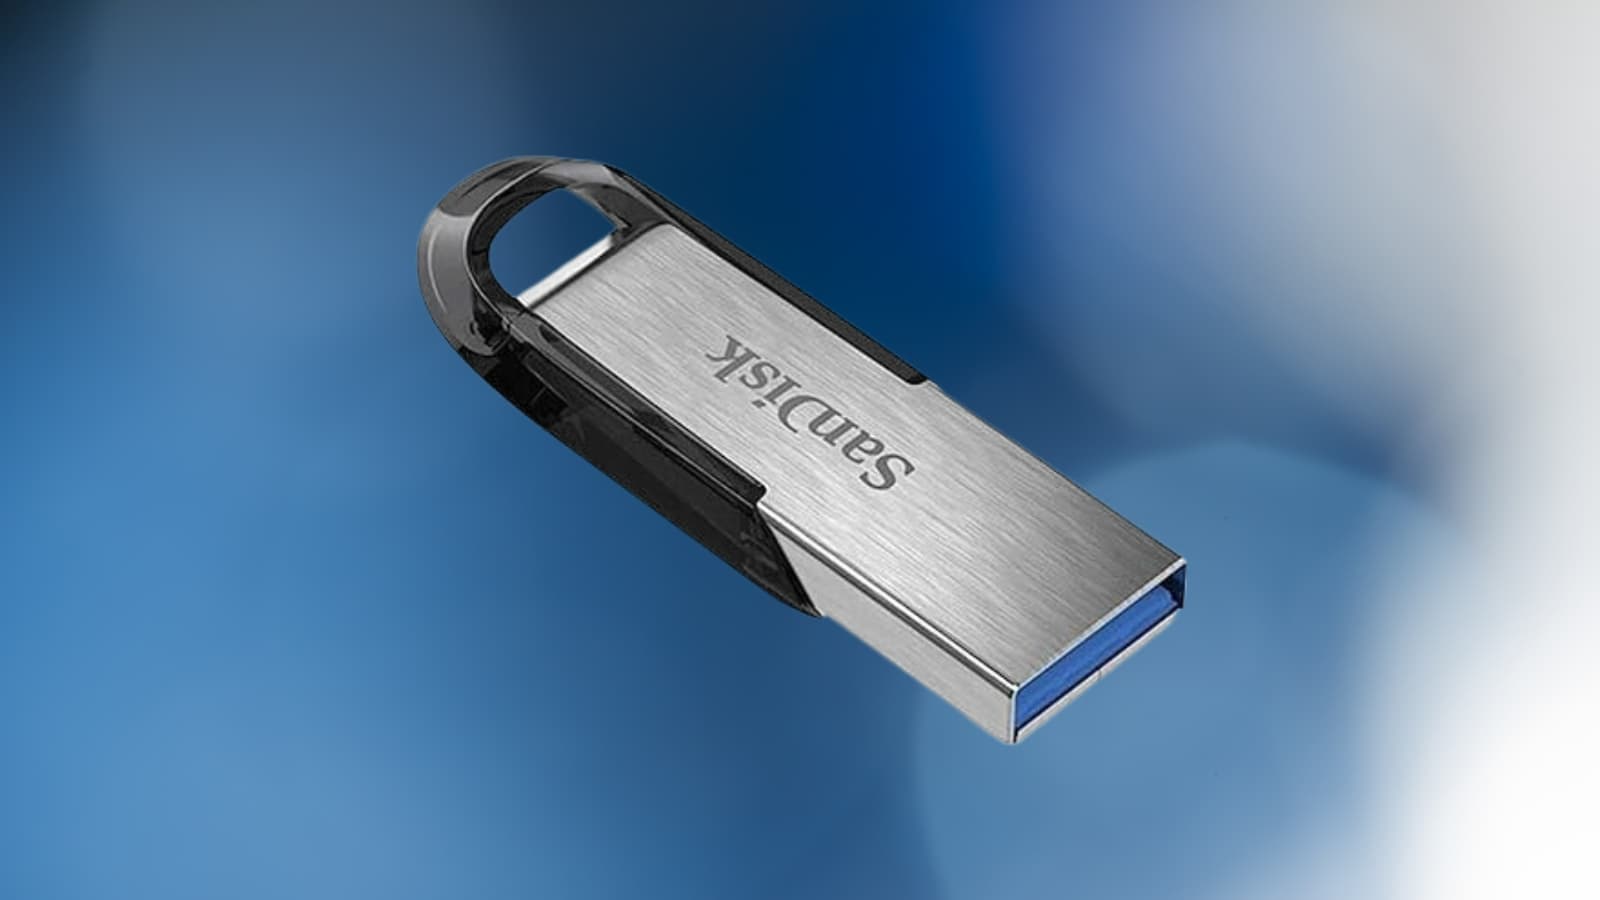 Cette clé USB Sandisk est proposée à un prix défiant toute